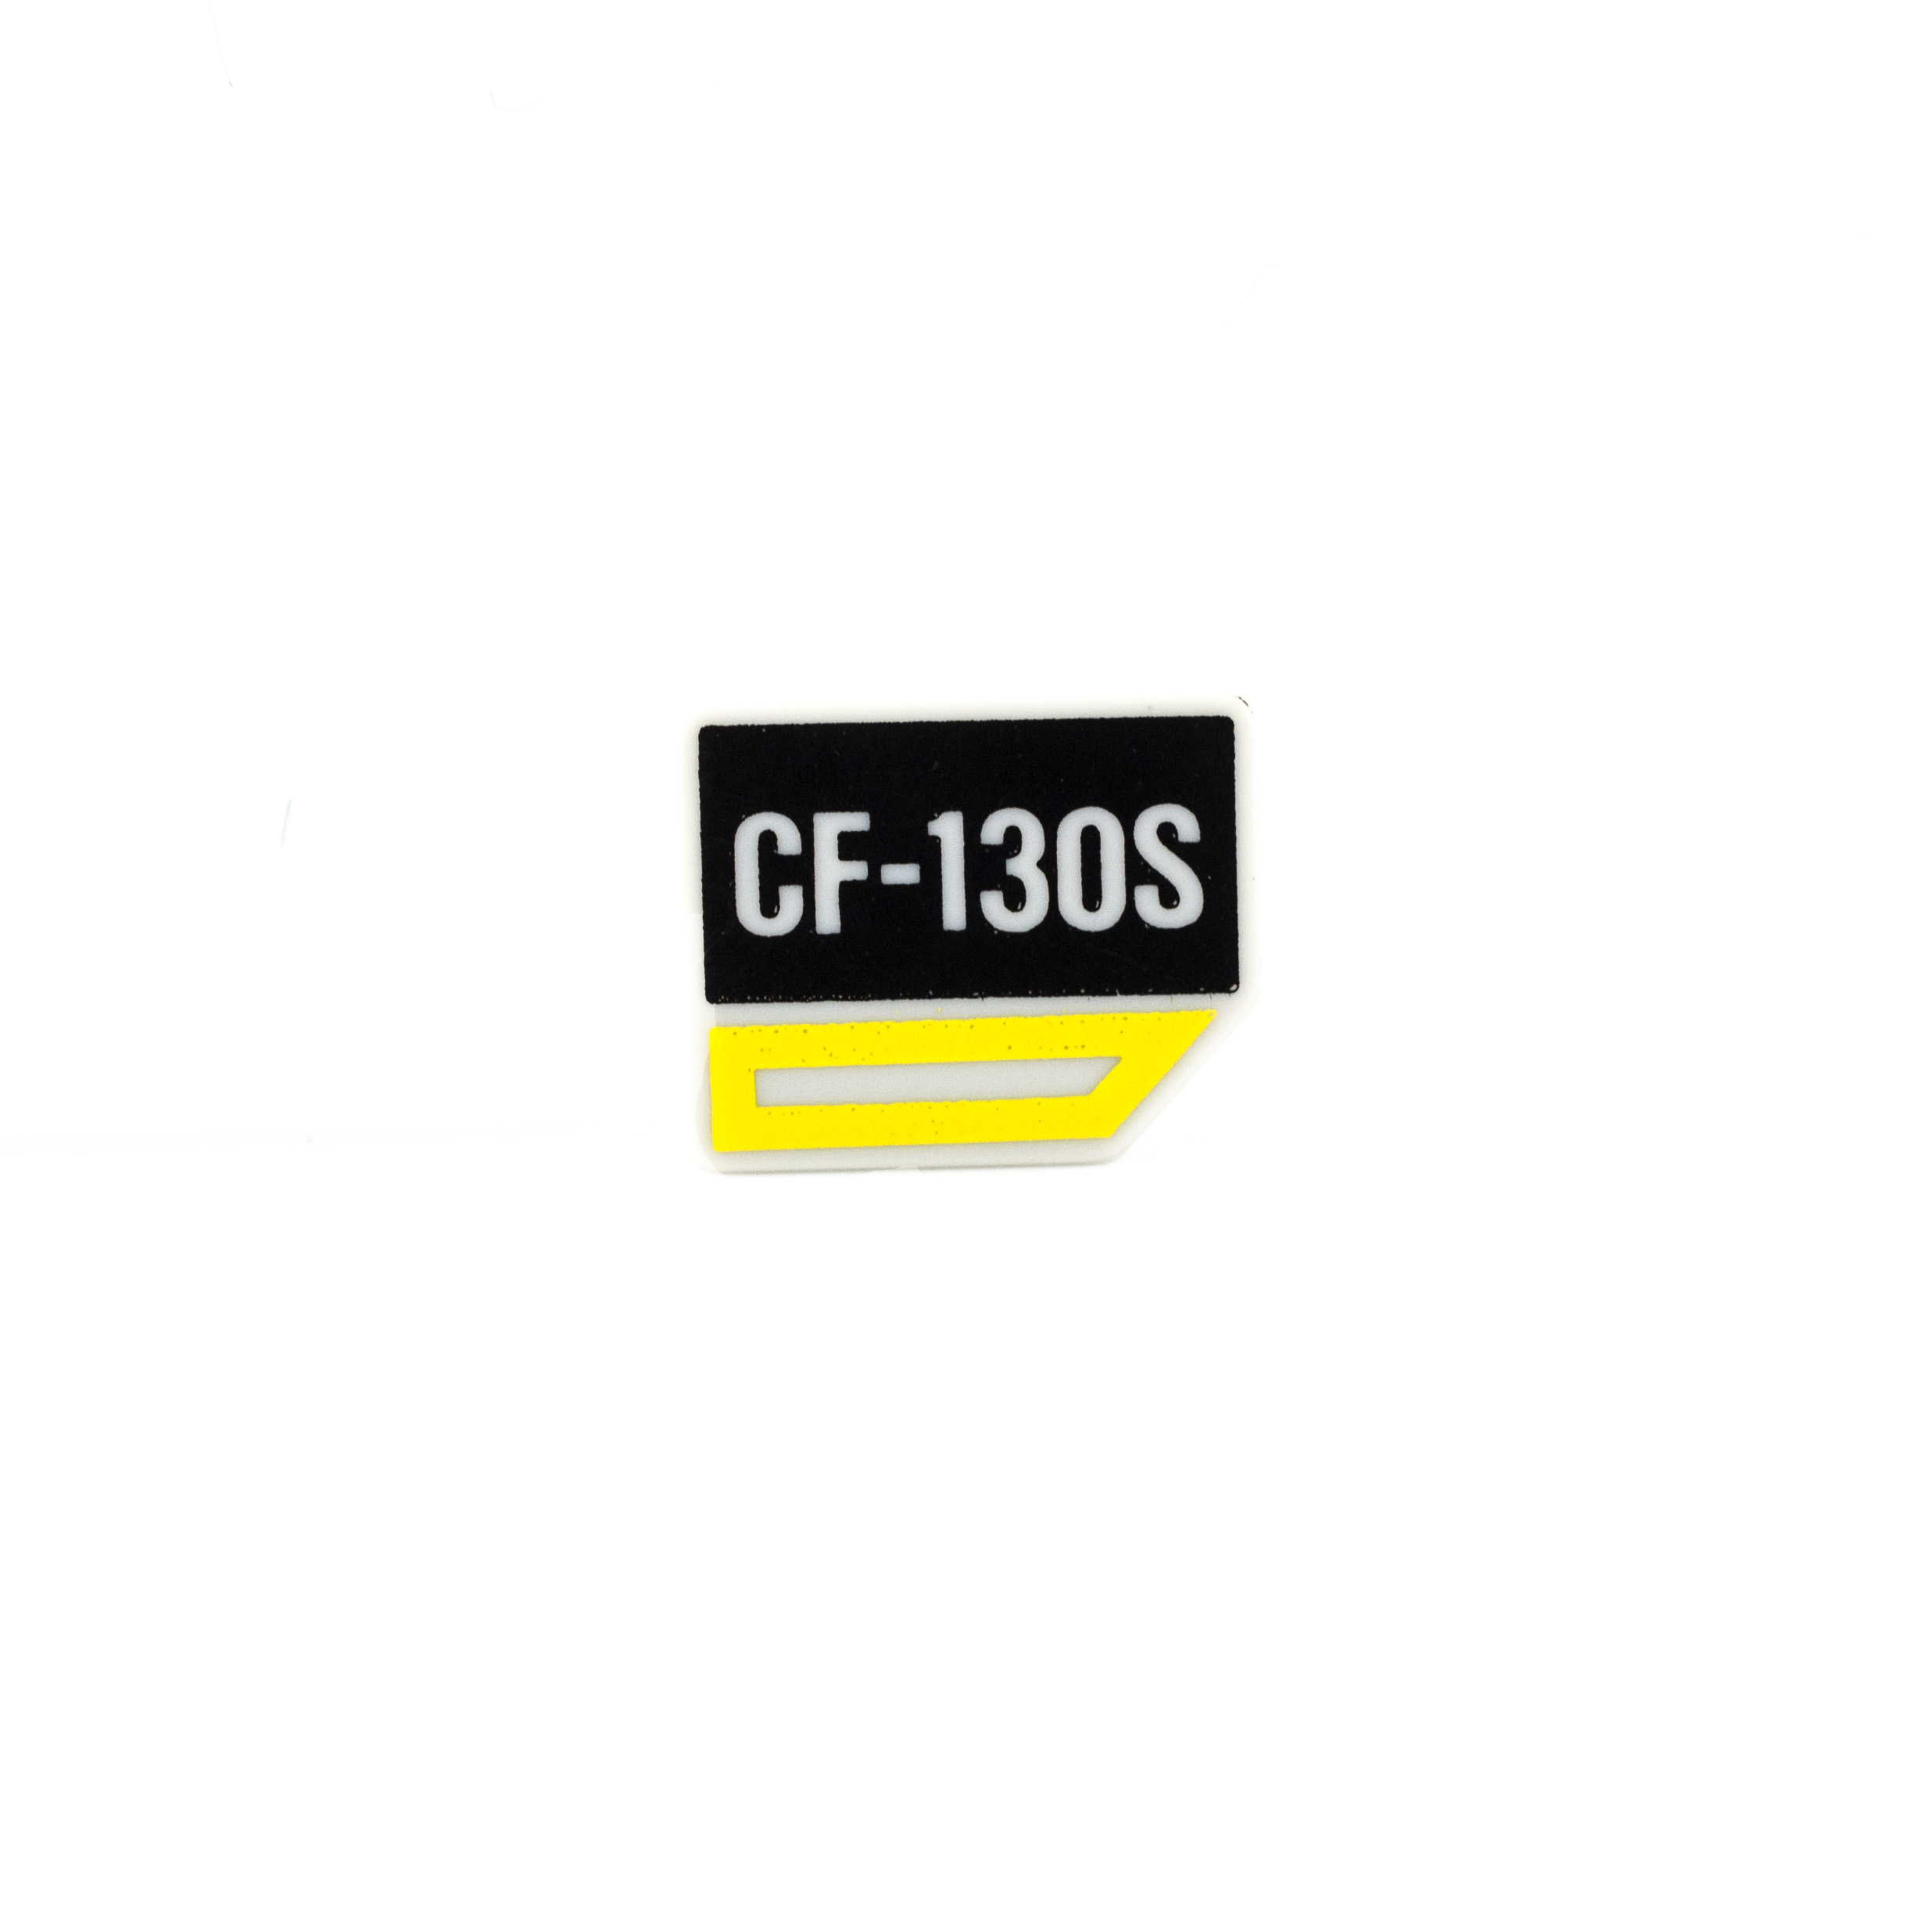 OEM Nameplate: Control Grip - TJF-140F